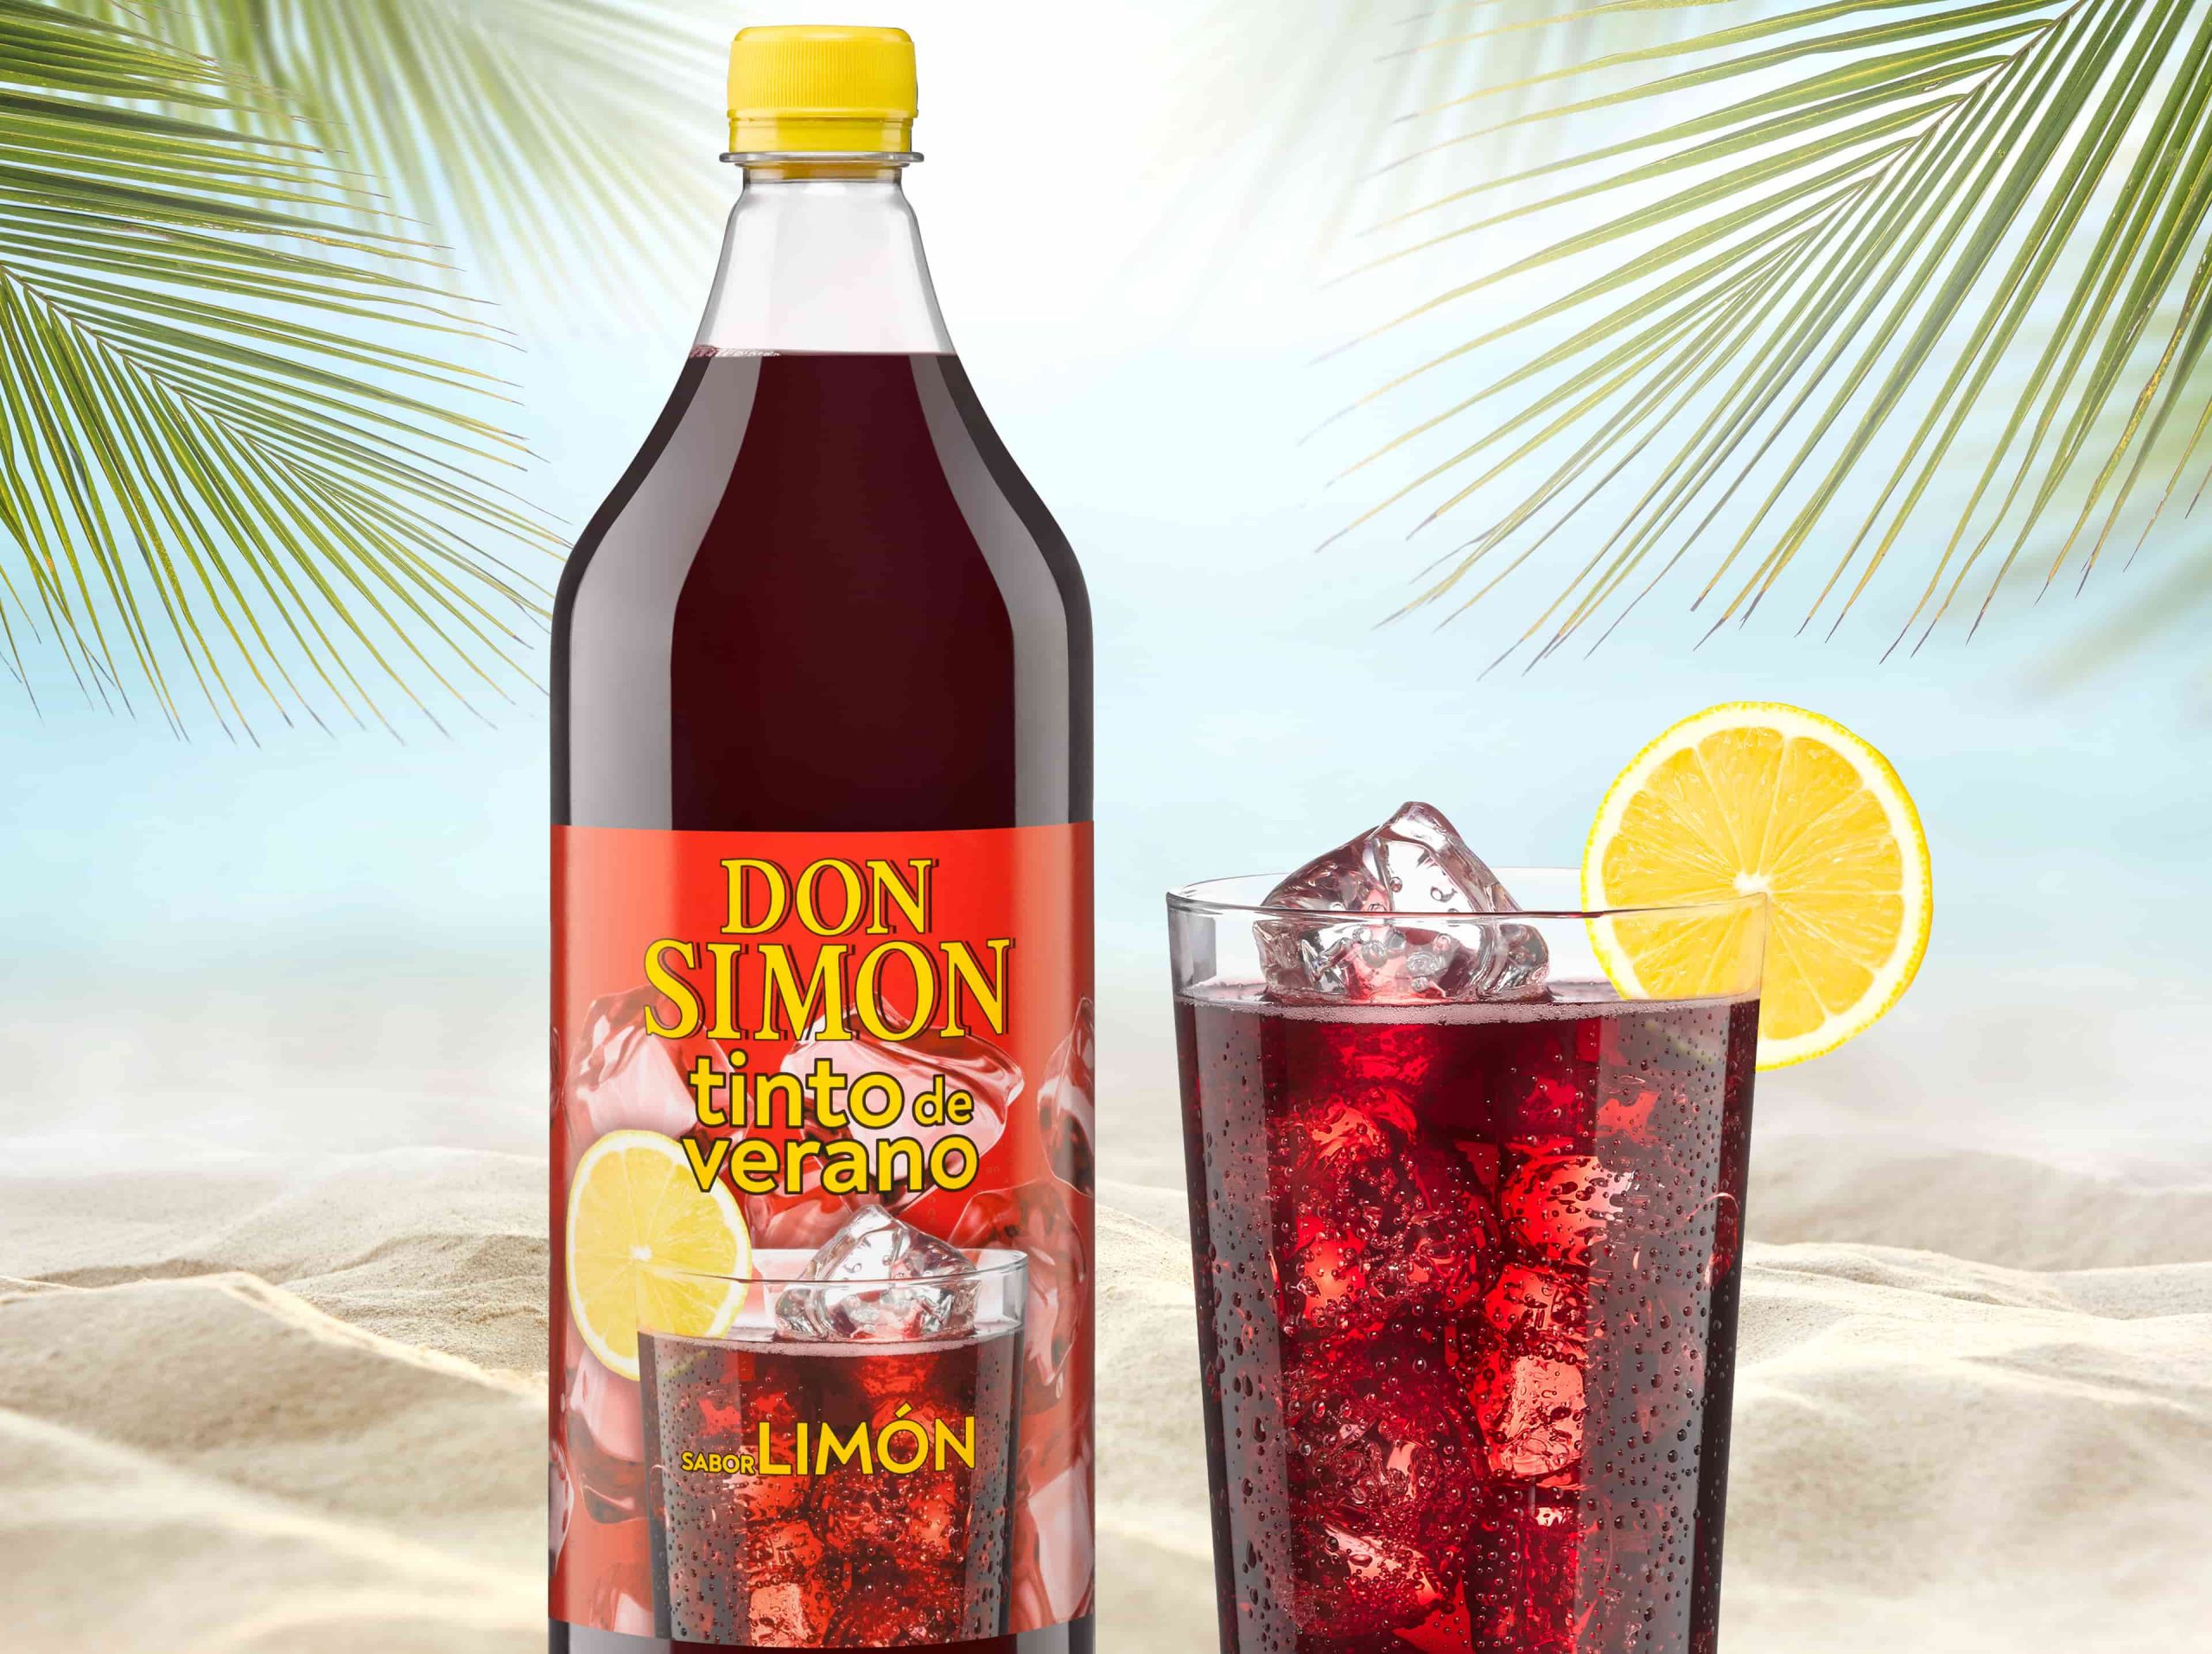 El tinto de verano sabor limón Casón Histórico y Don Simón en lata, la última revolución de Mercadona